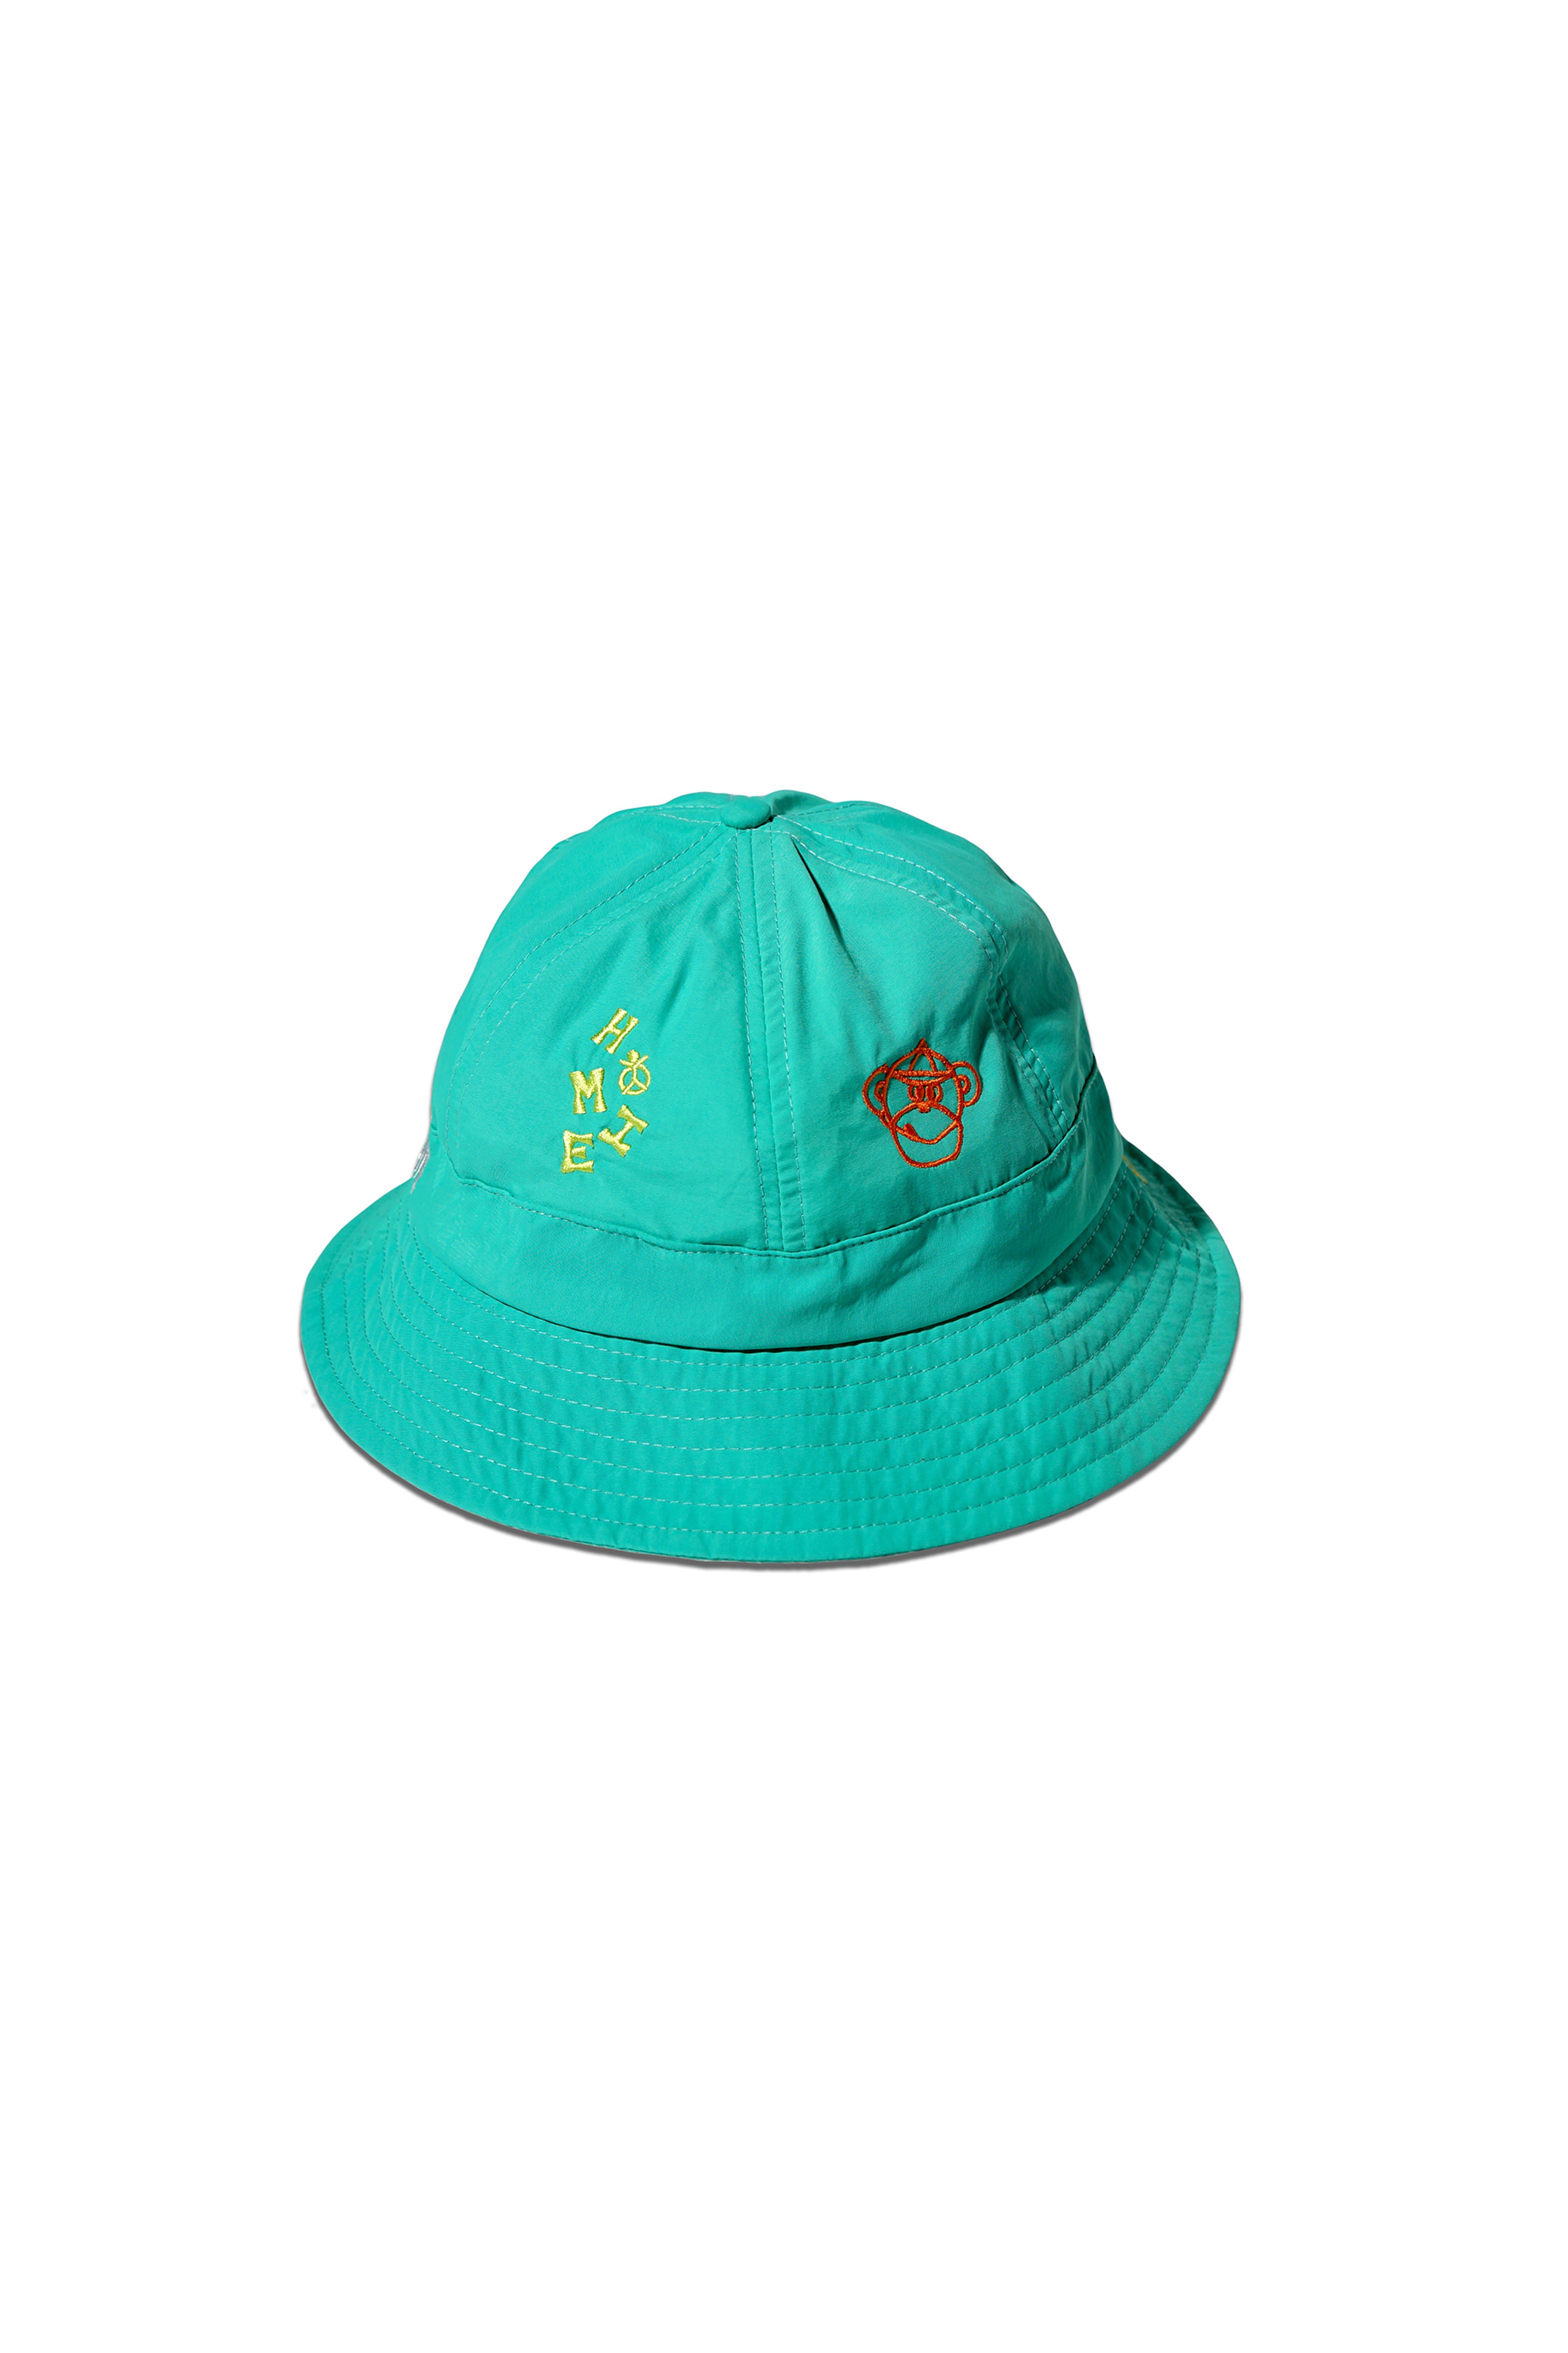 HoMie Bucket Hat '23